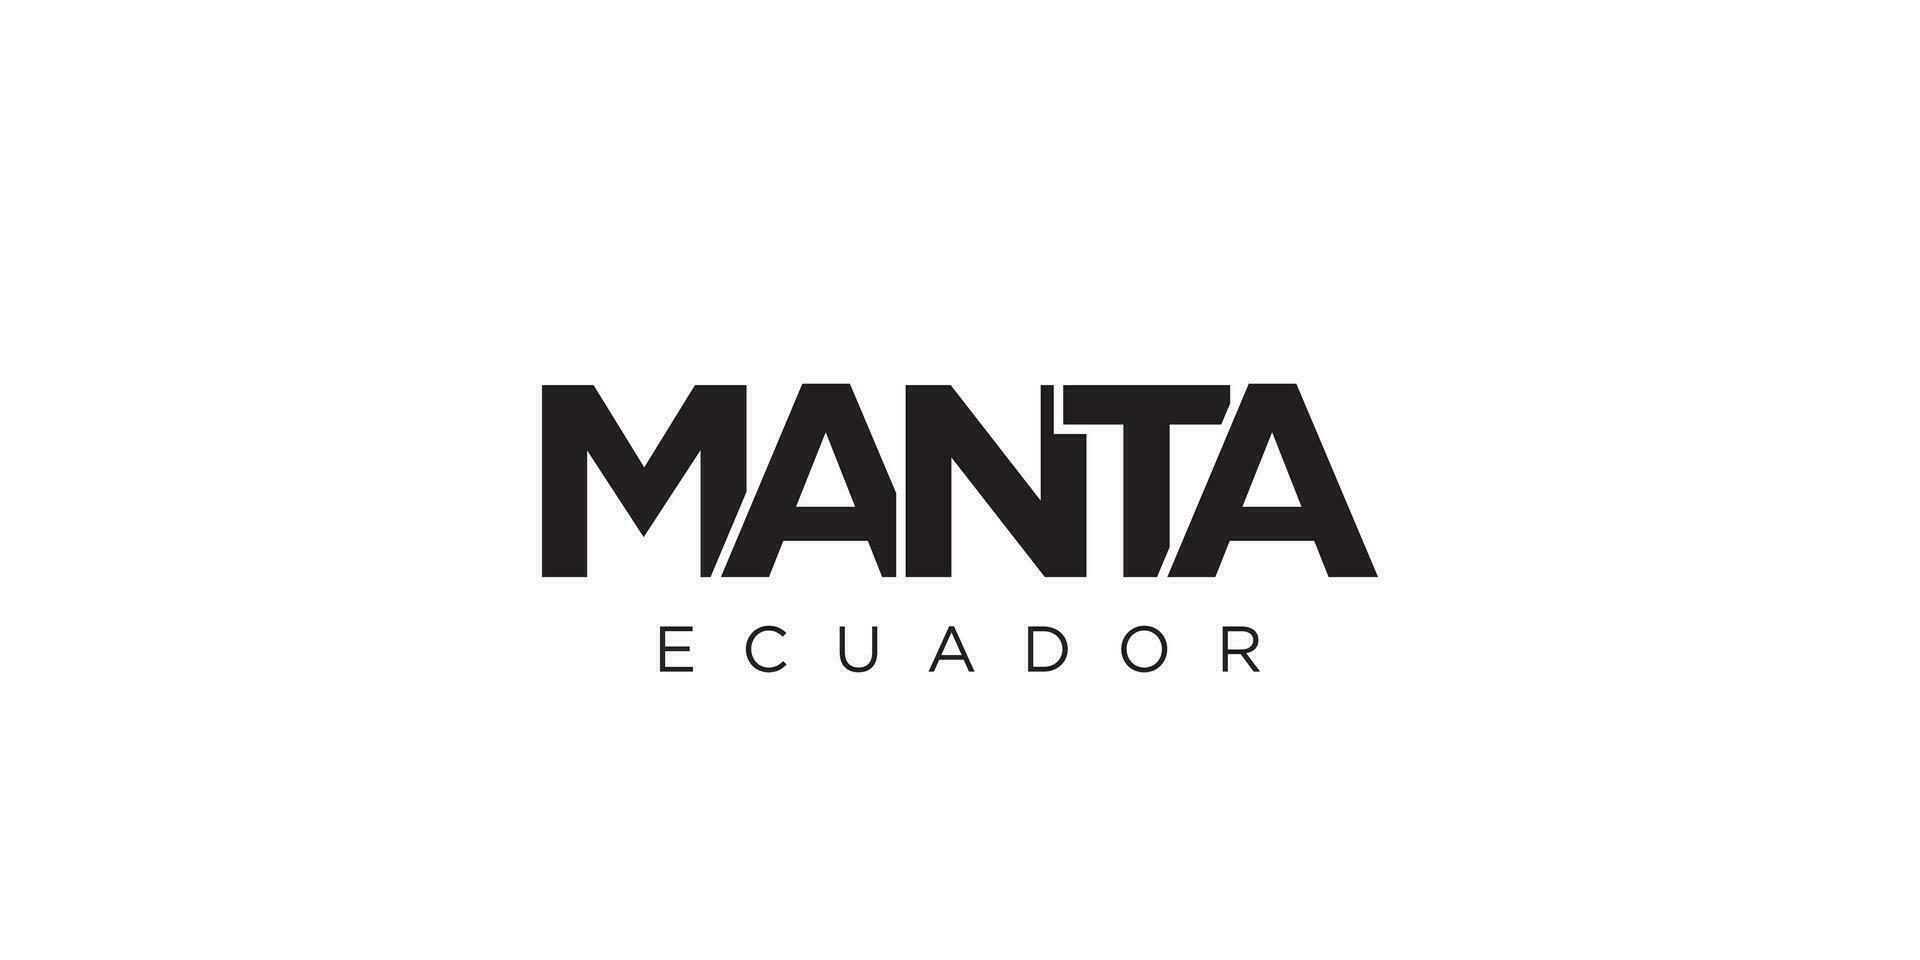 Manta im das Ecuador Emblem. das Design Eigenschaften ein geometrisch Stil, Vektor Illustration mit Fett gedruckt Typografie im ein modern Schriftart. das Grafik Slogan Beschriftung.